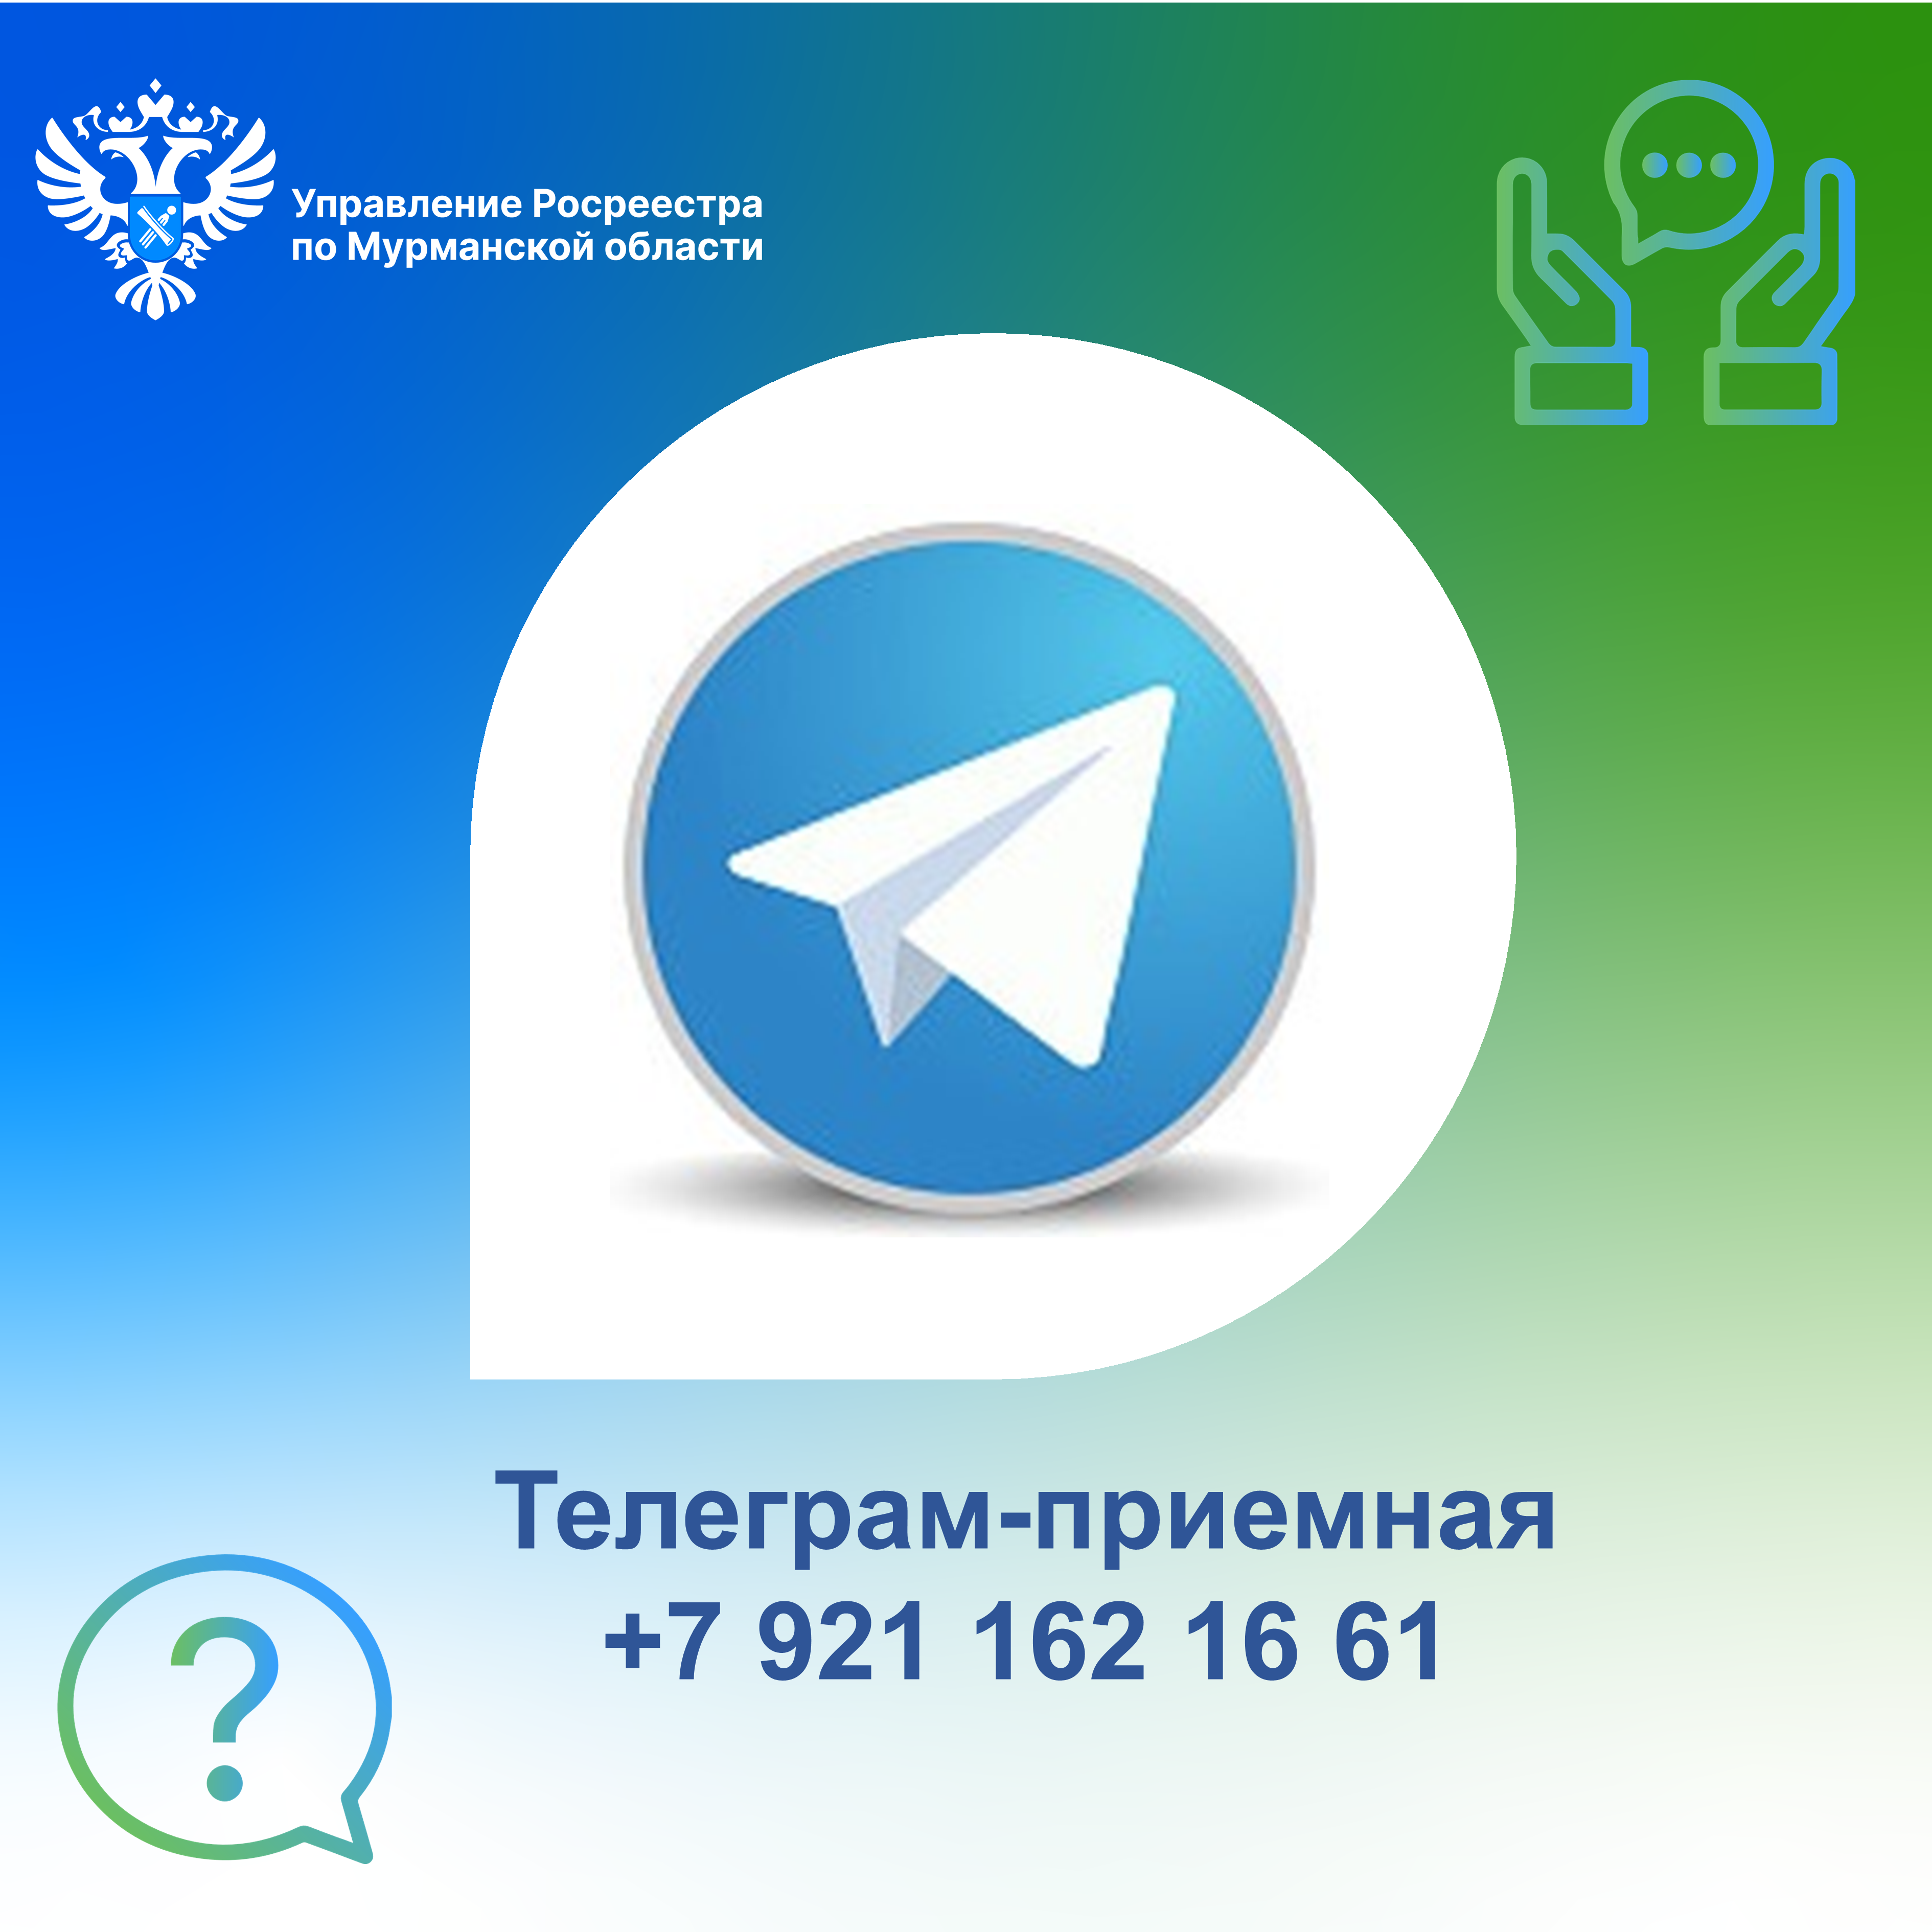 Смотреть телеграмм на русском языке фото 55